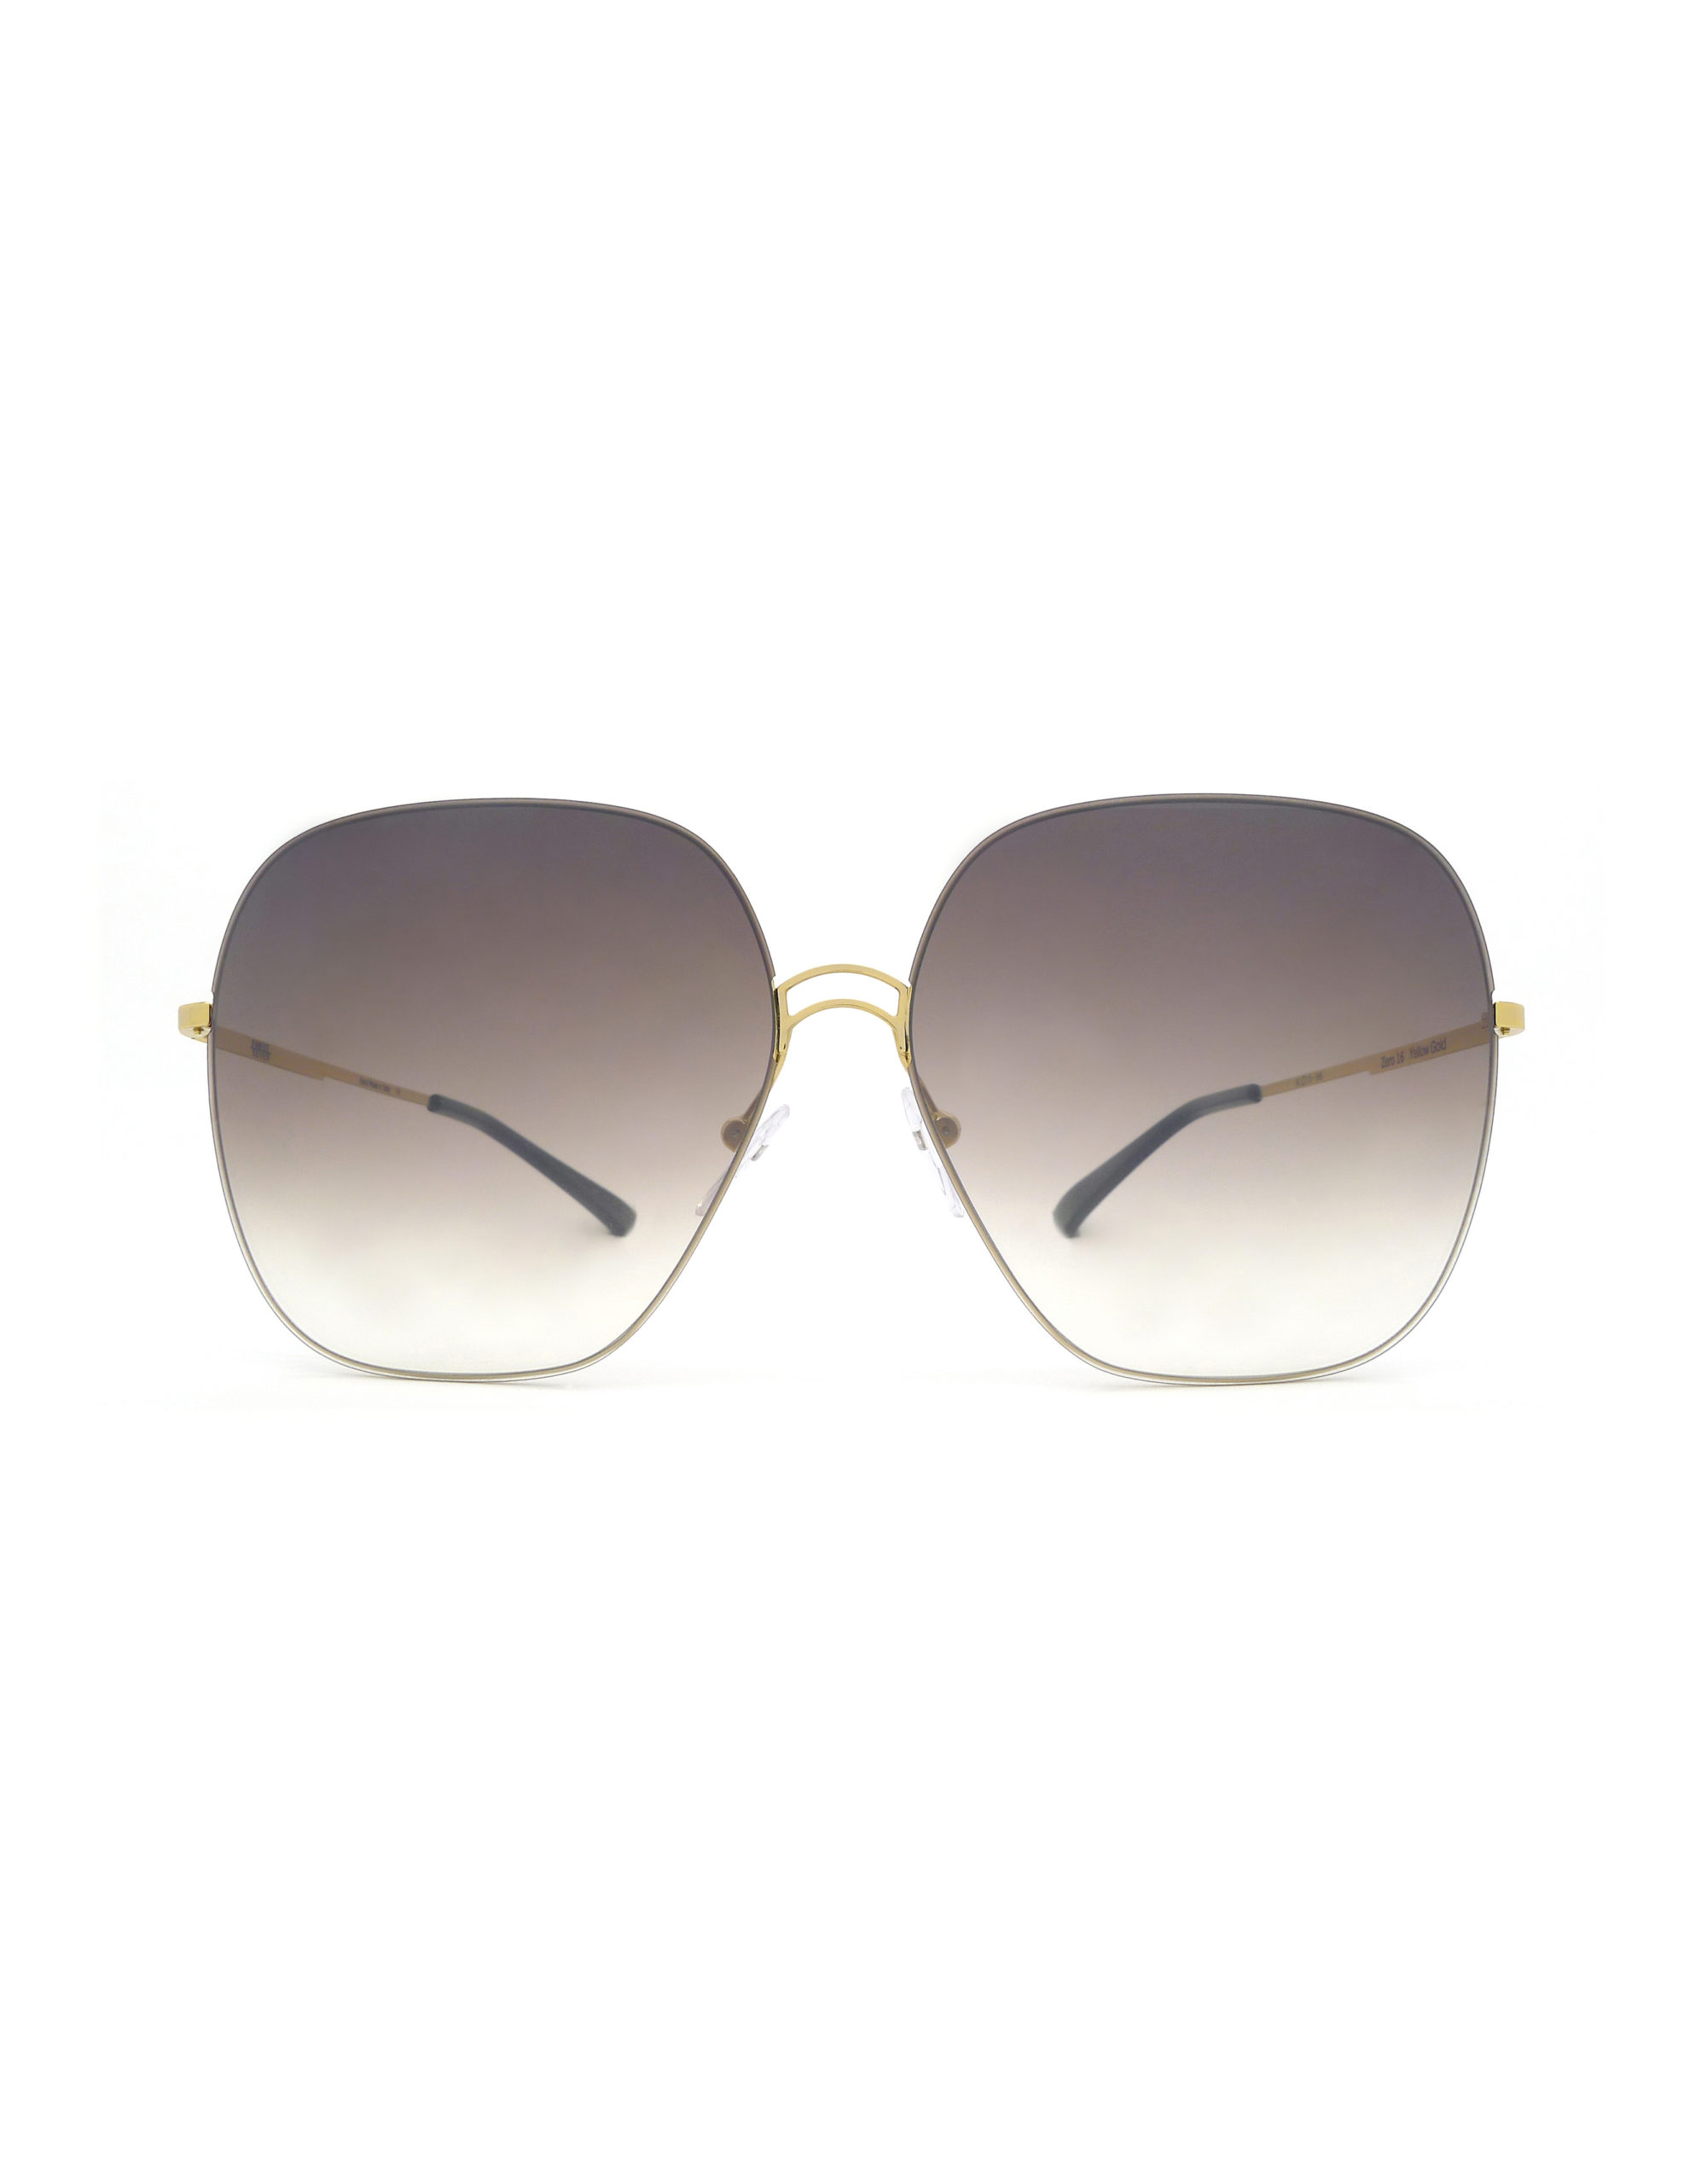 ZERO 16 Grad Brown - Luxury Sunglasses, Designer Sunglasses | Finest Seven